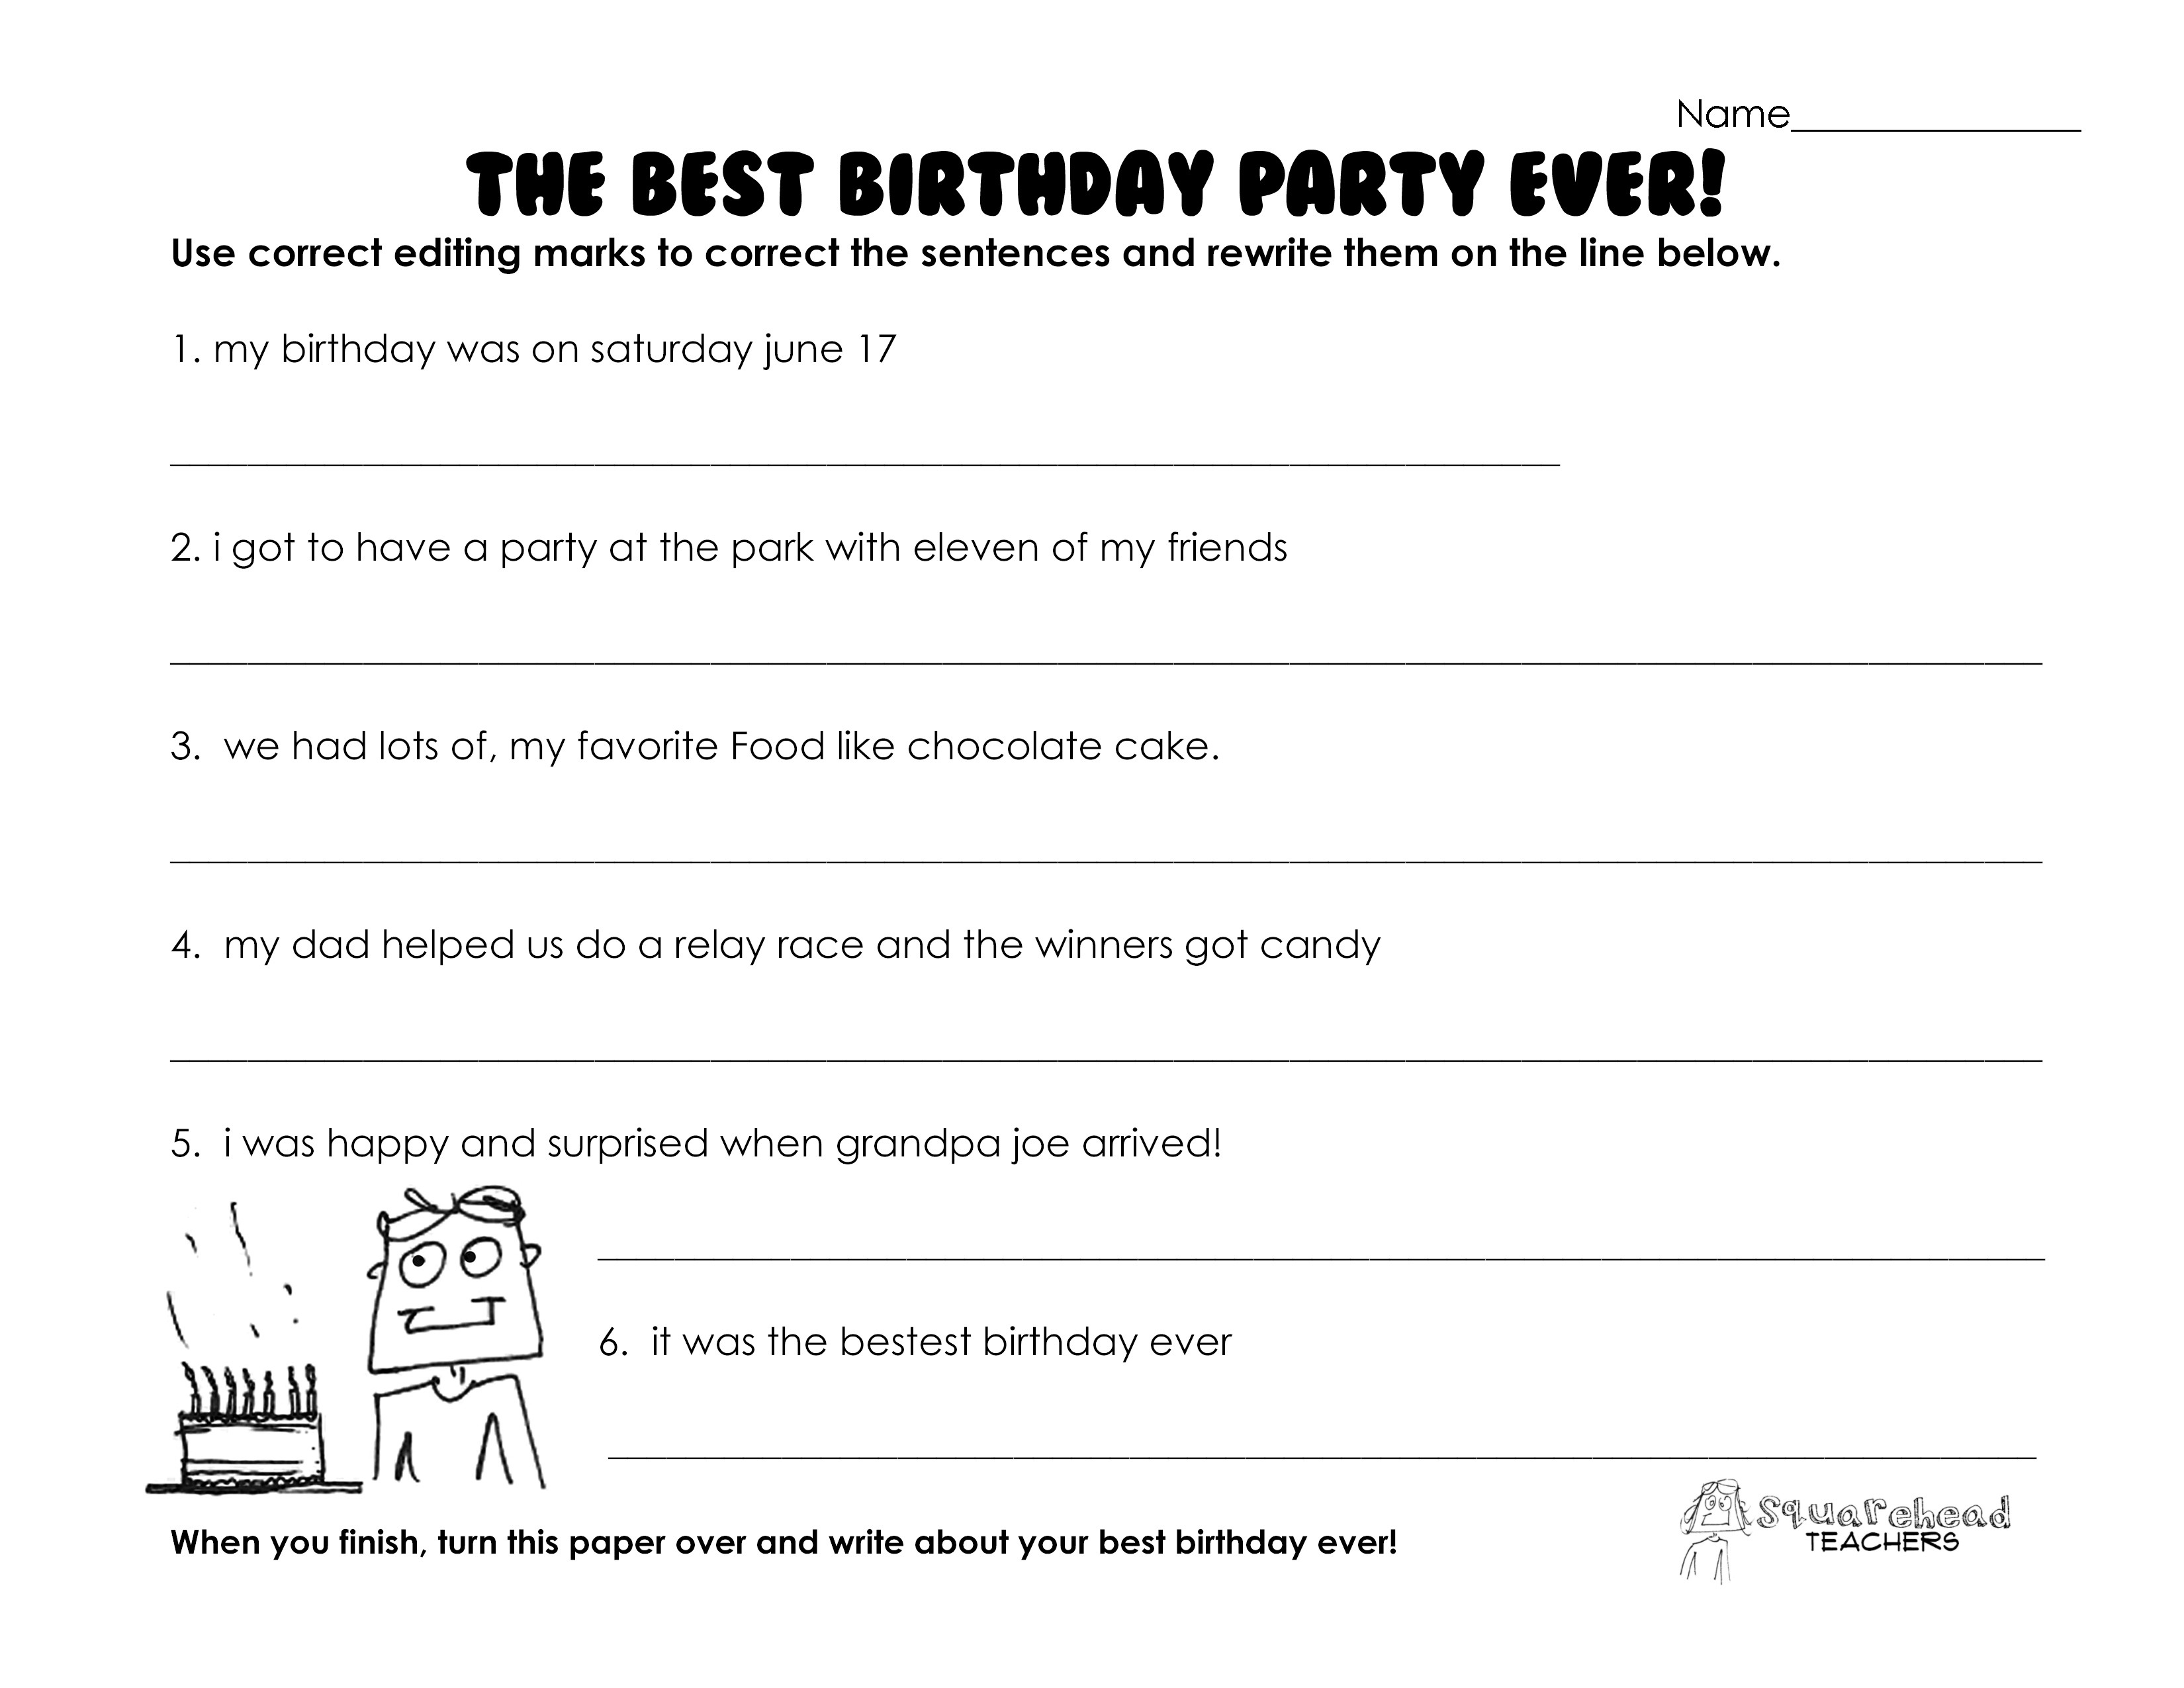 Best Birthday Party Ever Grammar Practice Worksheet